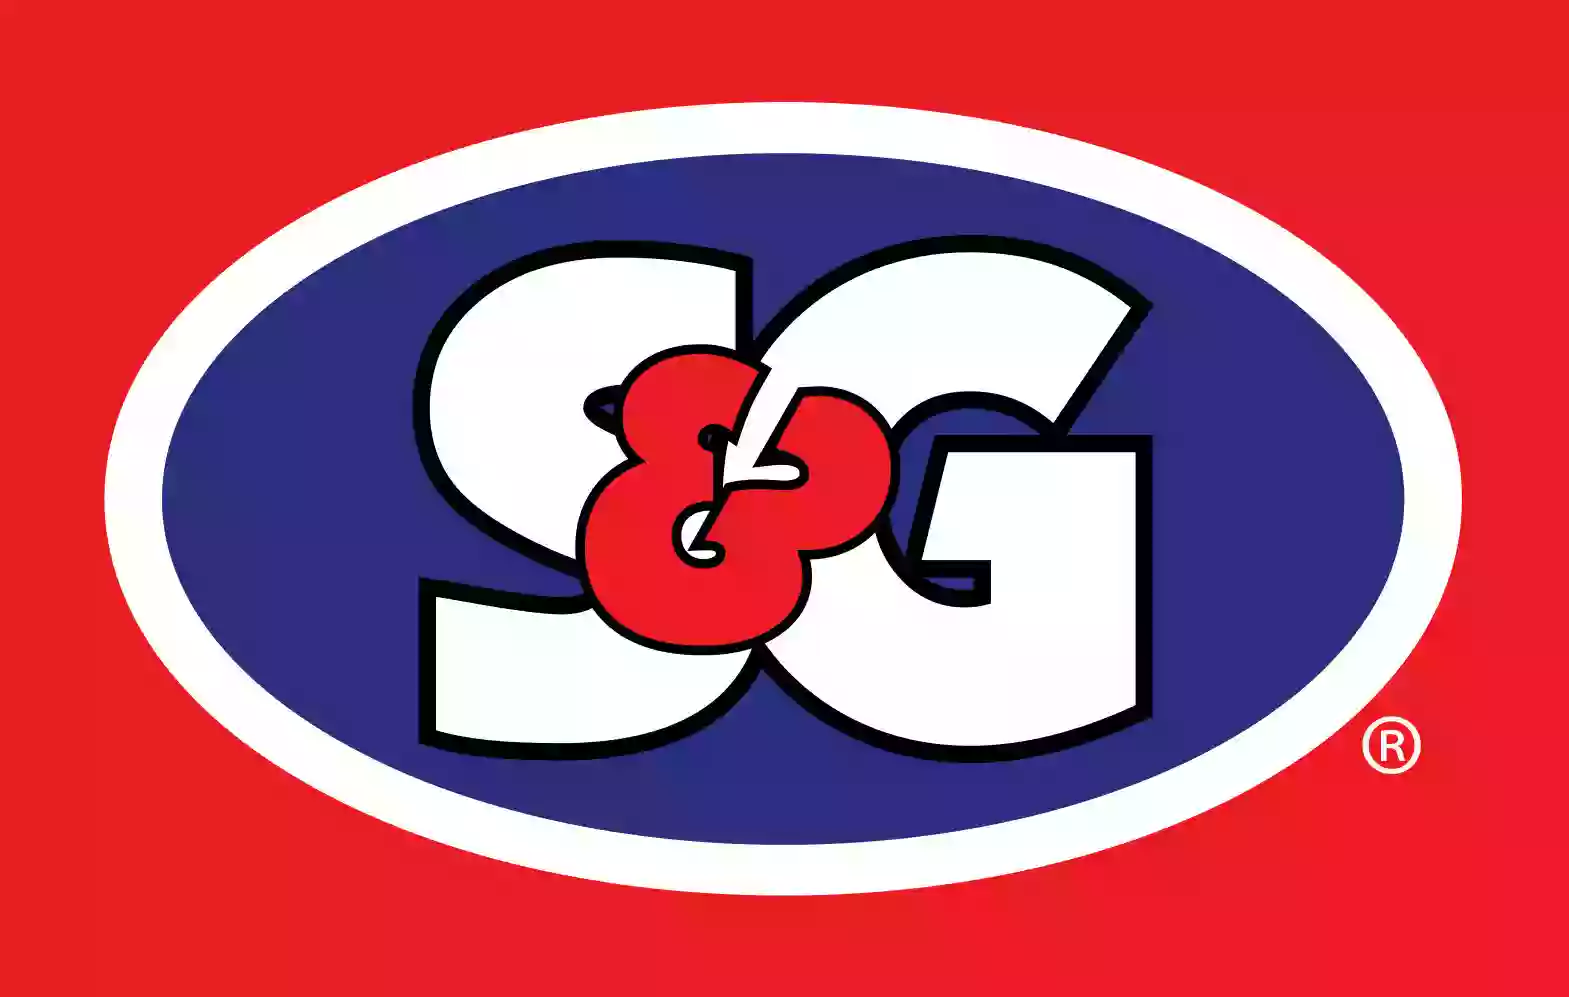 S&G #55